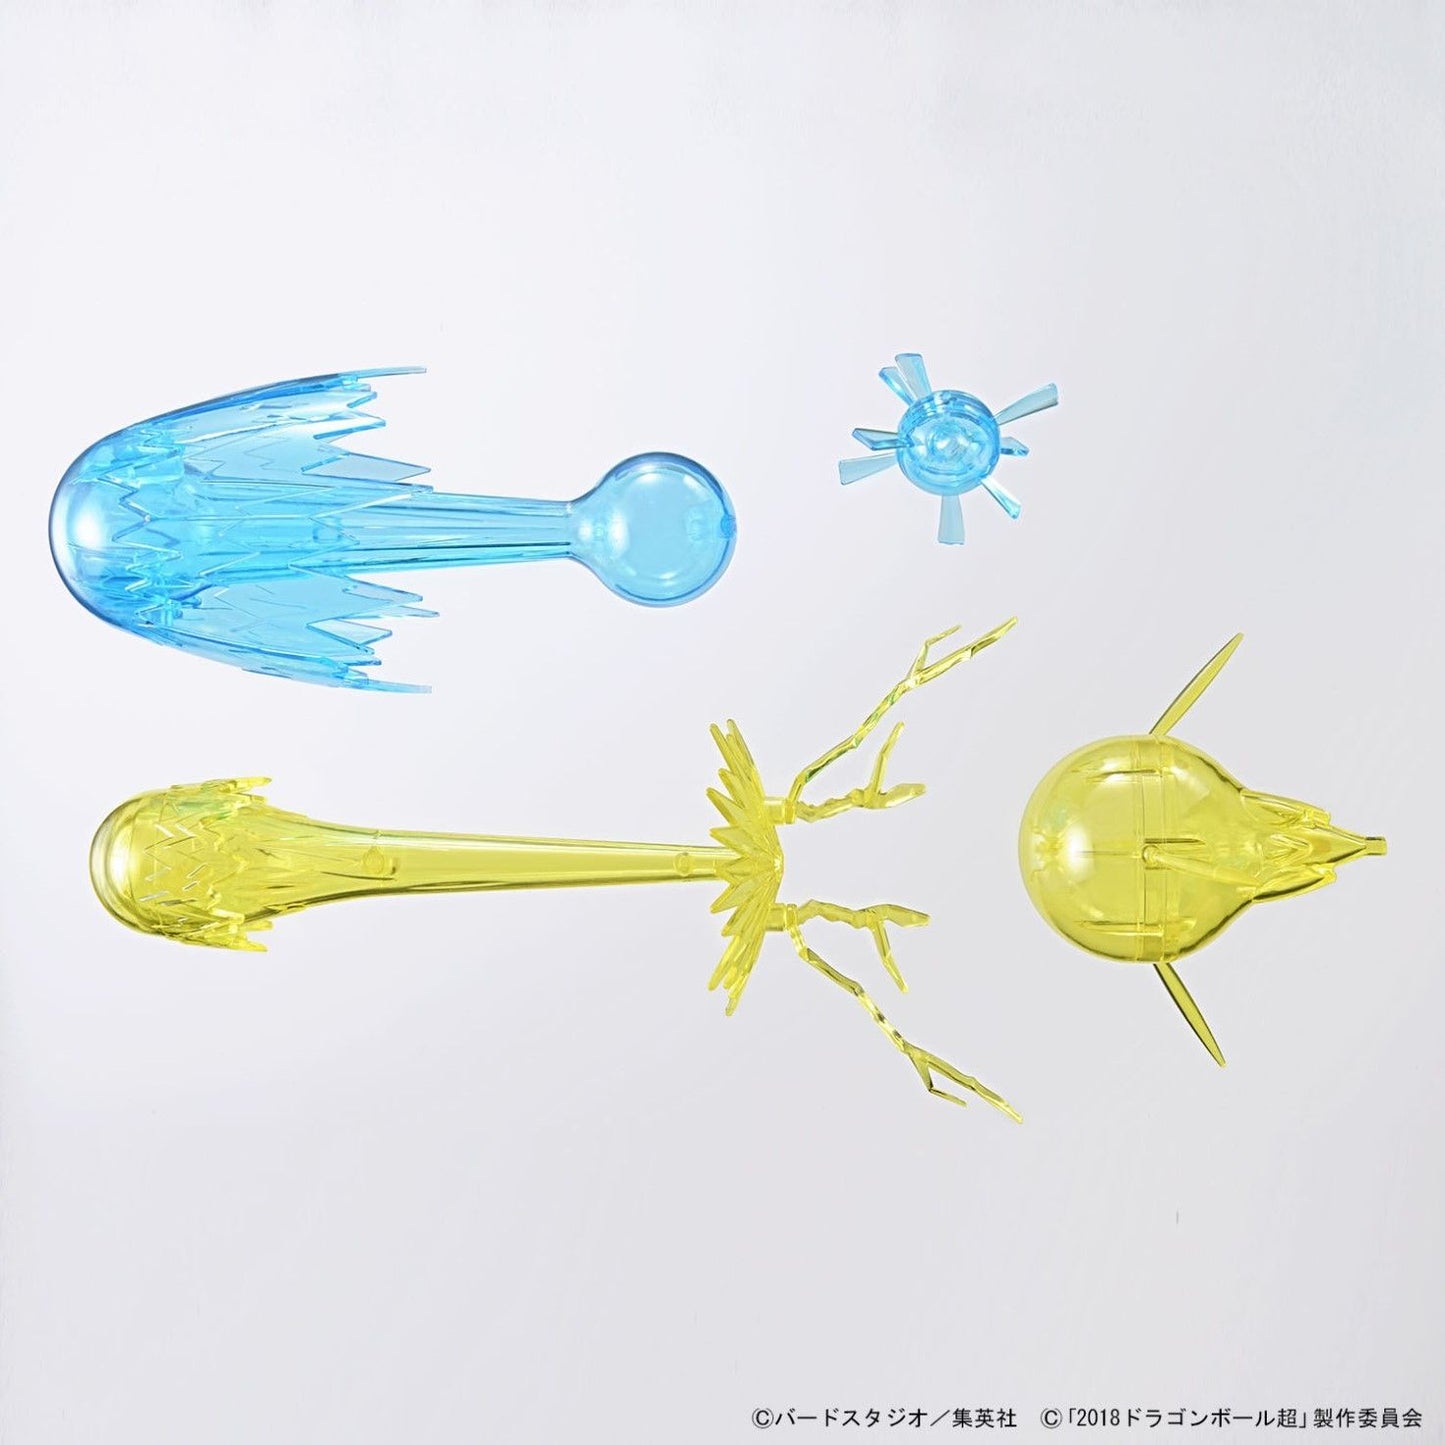 Bandai Spirits Figur – Rise Standard Super Saiyajin Gott Super Saiyajin Gogeta Dragon Ball Super Modellbausatz